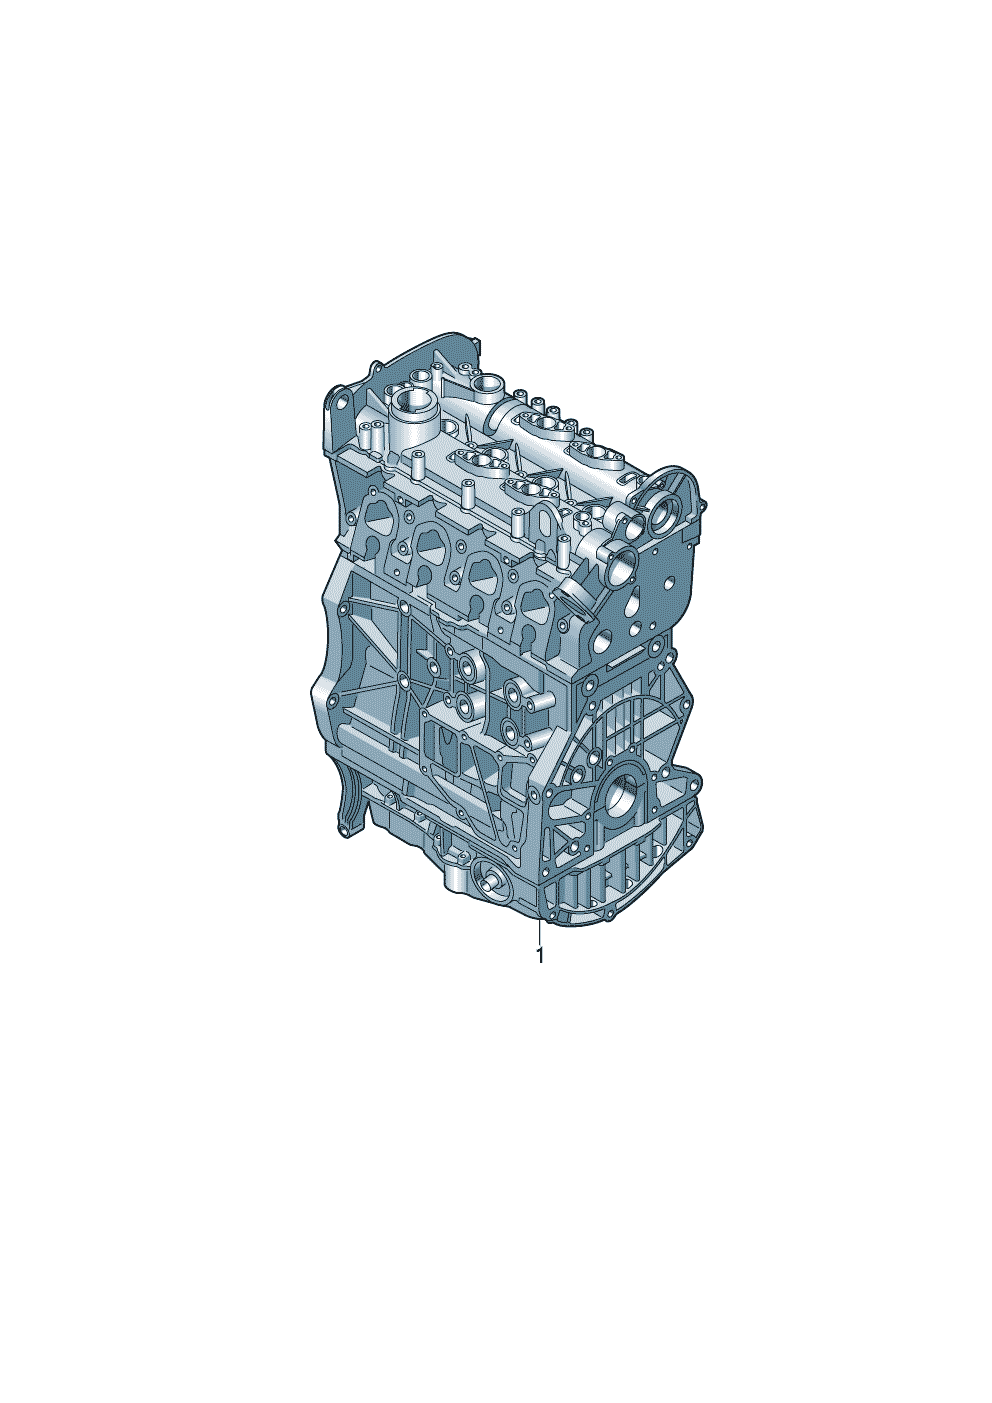 Base engine 1.4ltr. - Audi A3/Sportback - a3